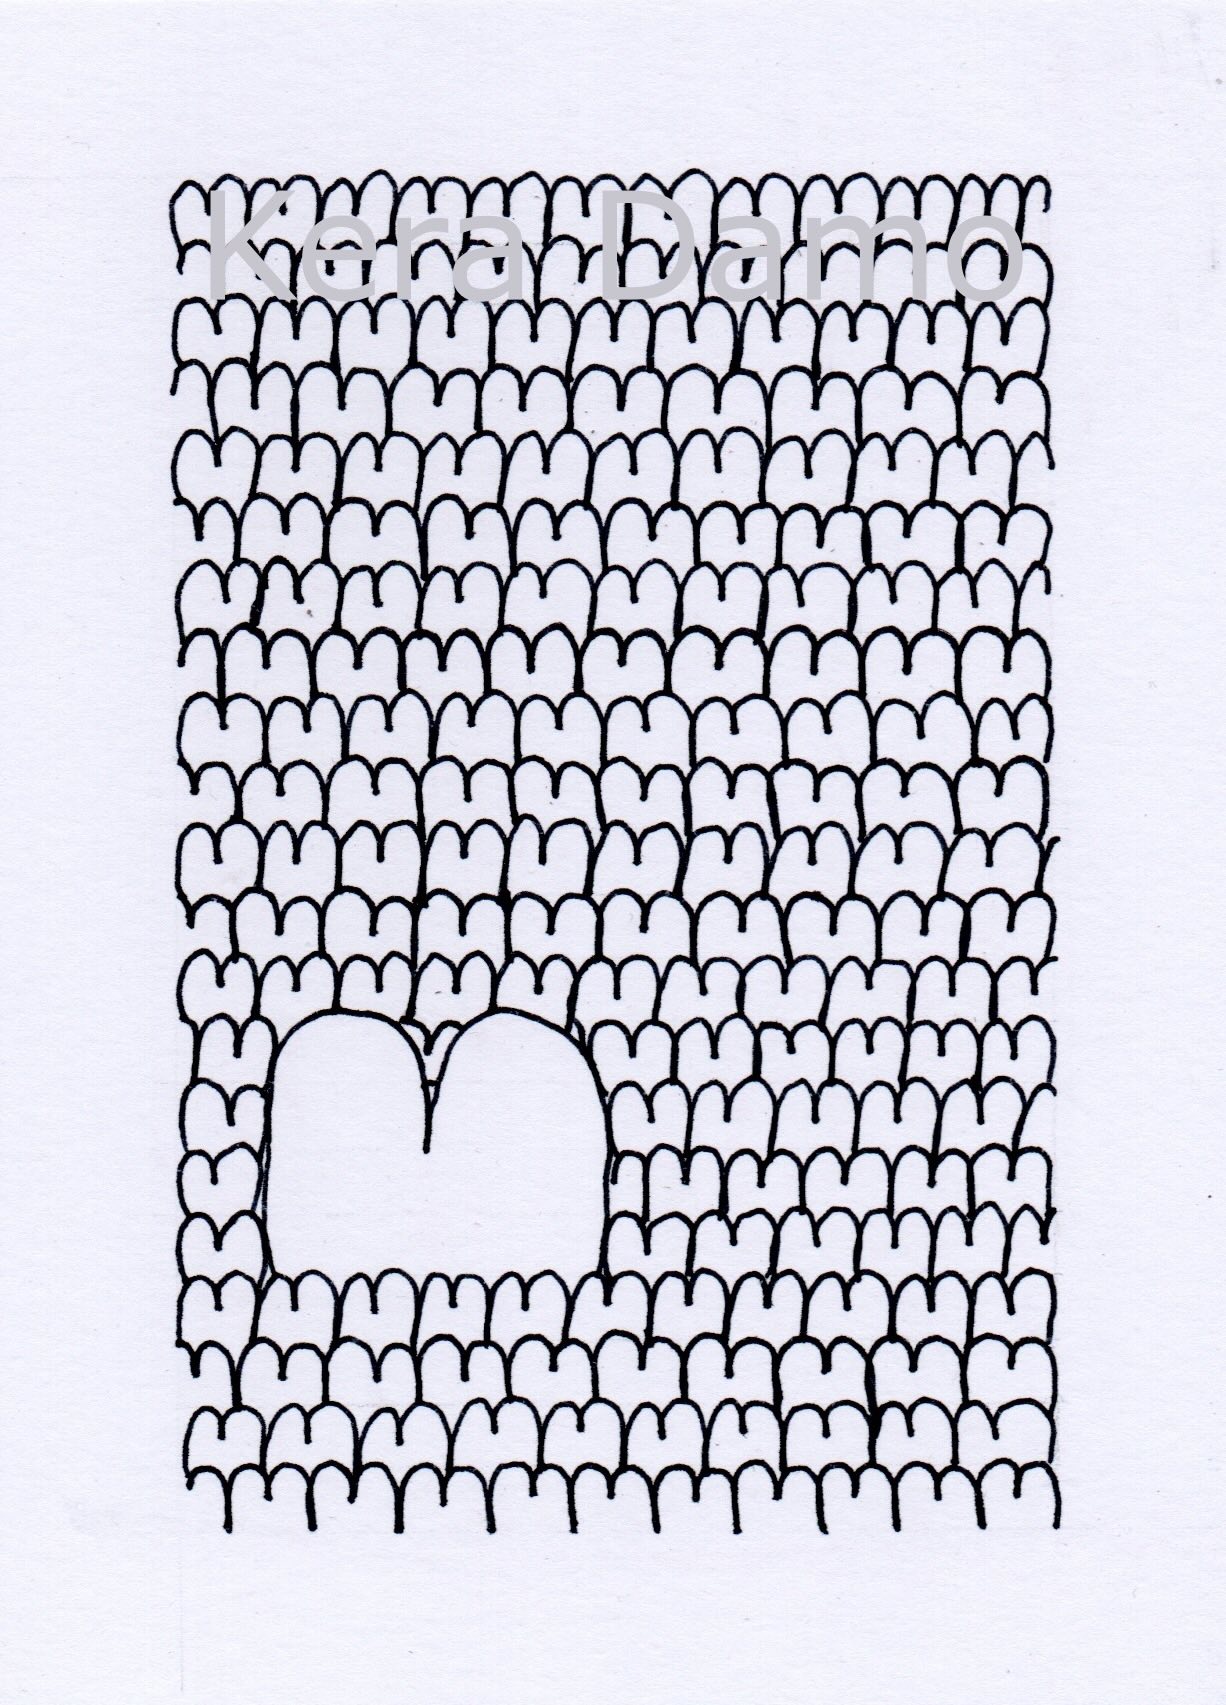 A black and white pen drawing made by visual artist Kera Damo from the Hague / Een zwart wit pentekening gemaakt door beeldend kunstenaar Kera Damo uit Den Haag